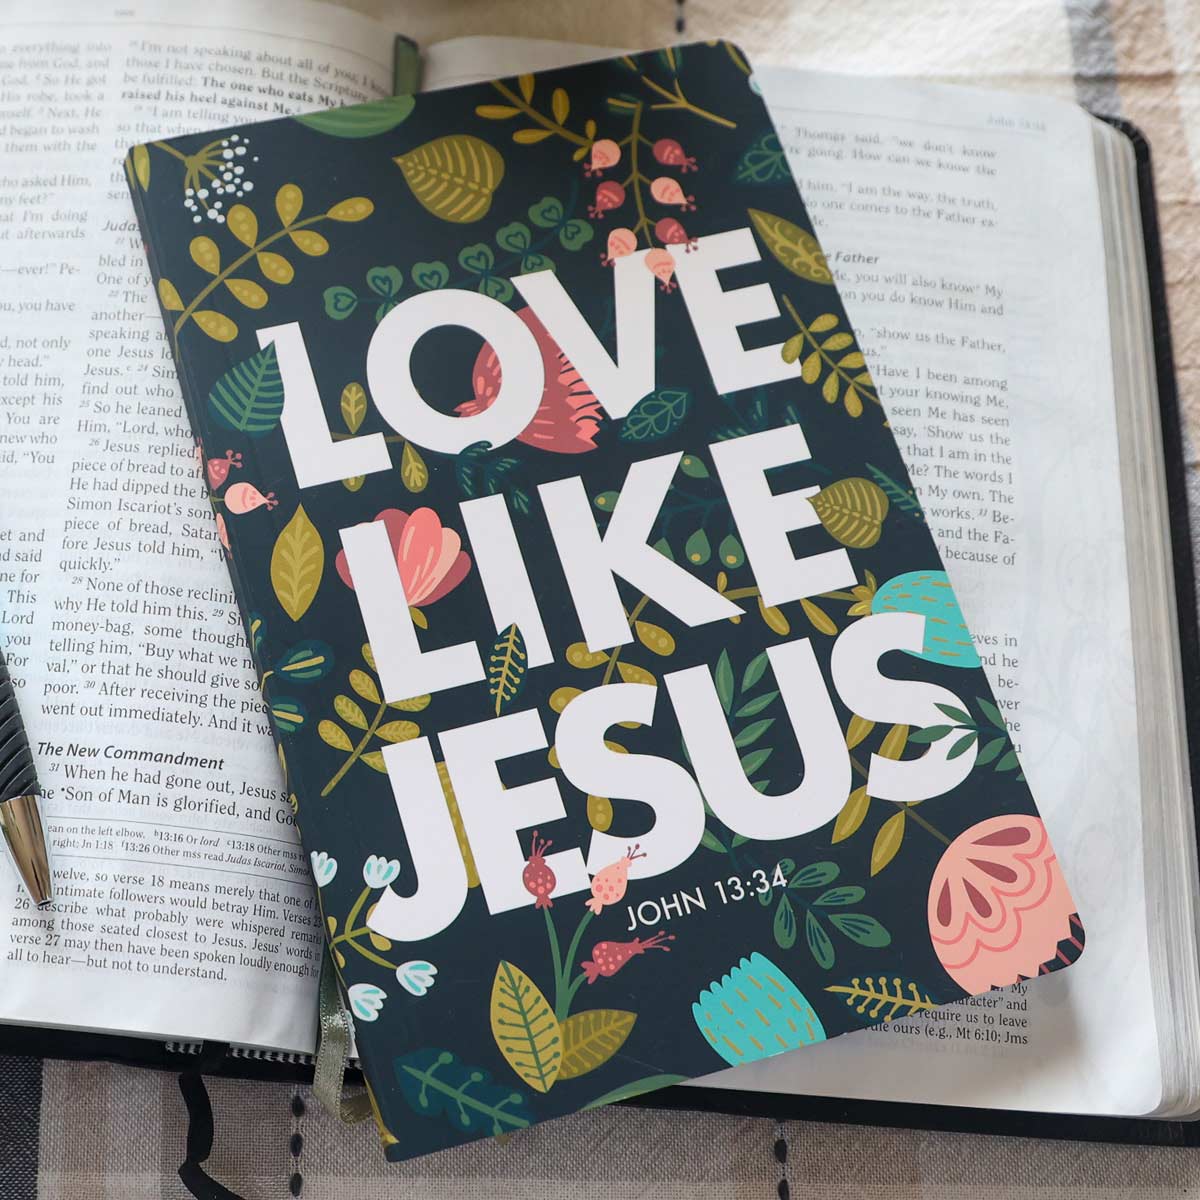 Blessed Girl Womens Paperback Journal Love Like Jesus